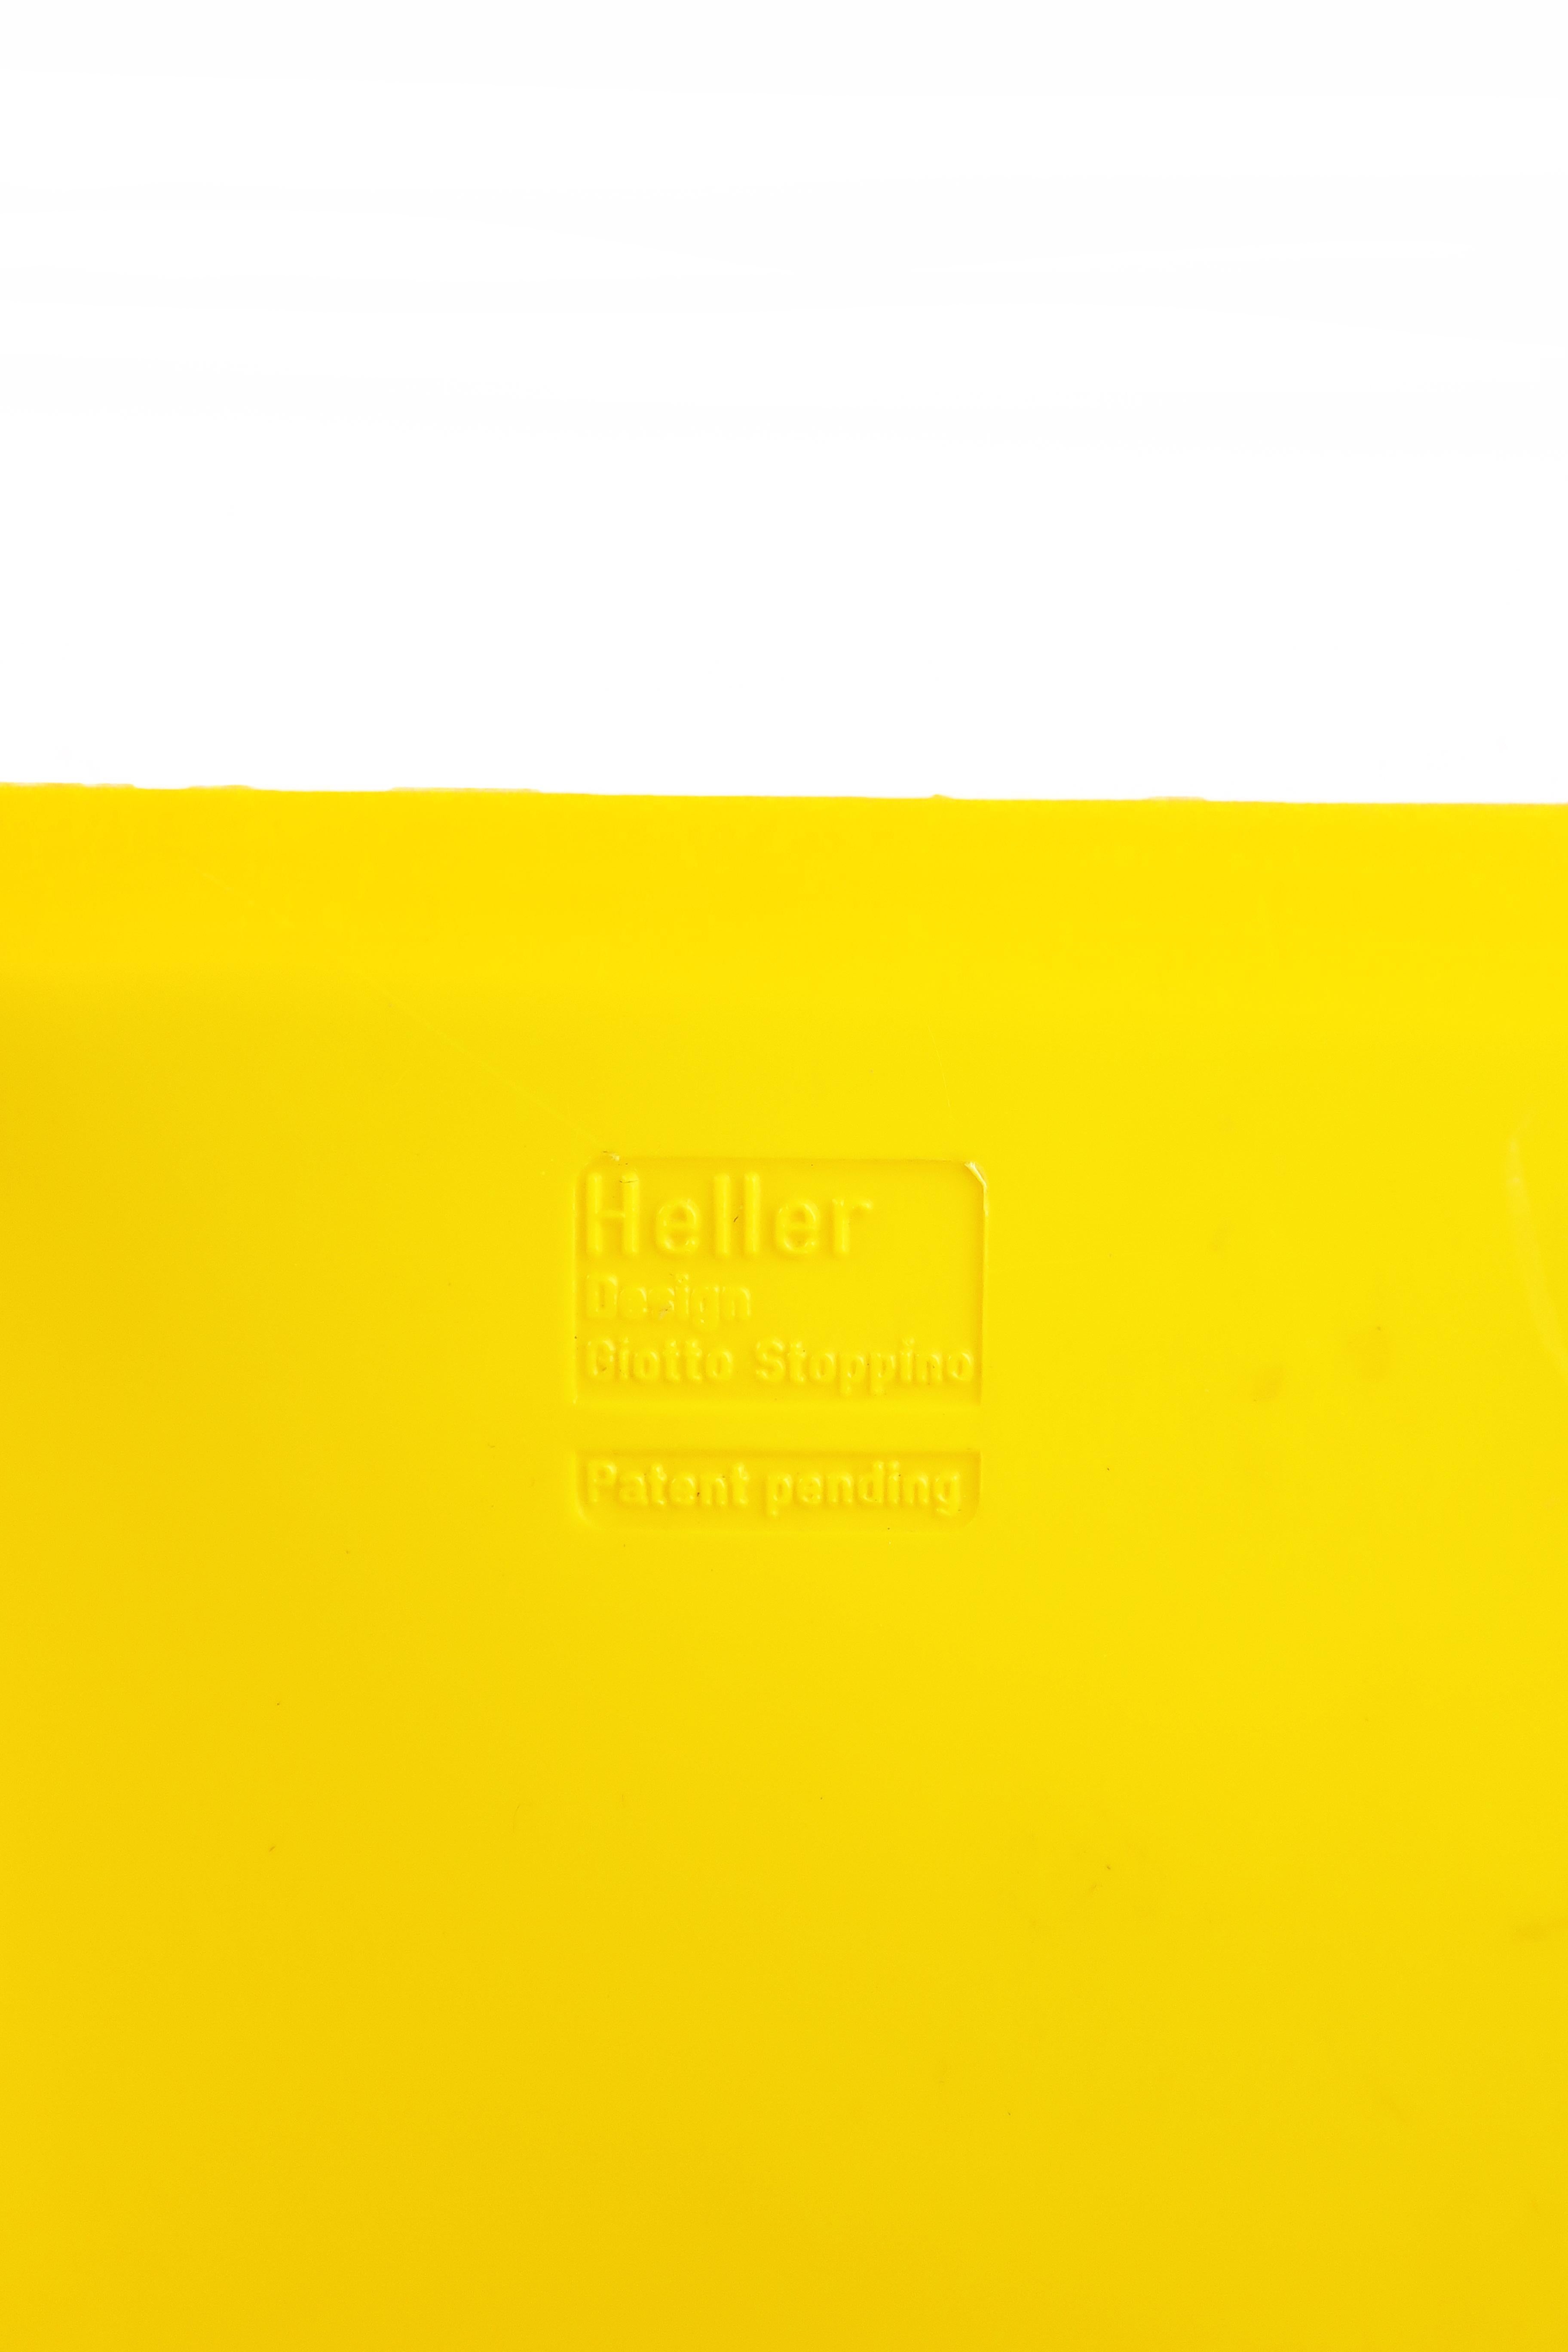 yellow magazine holder